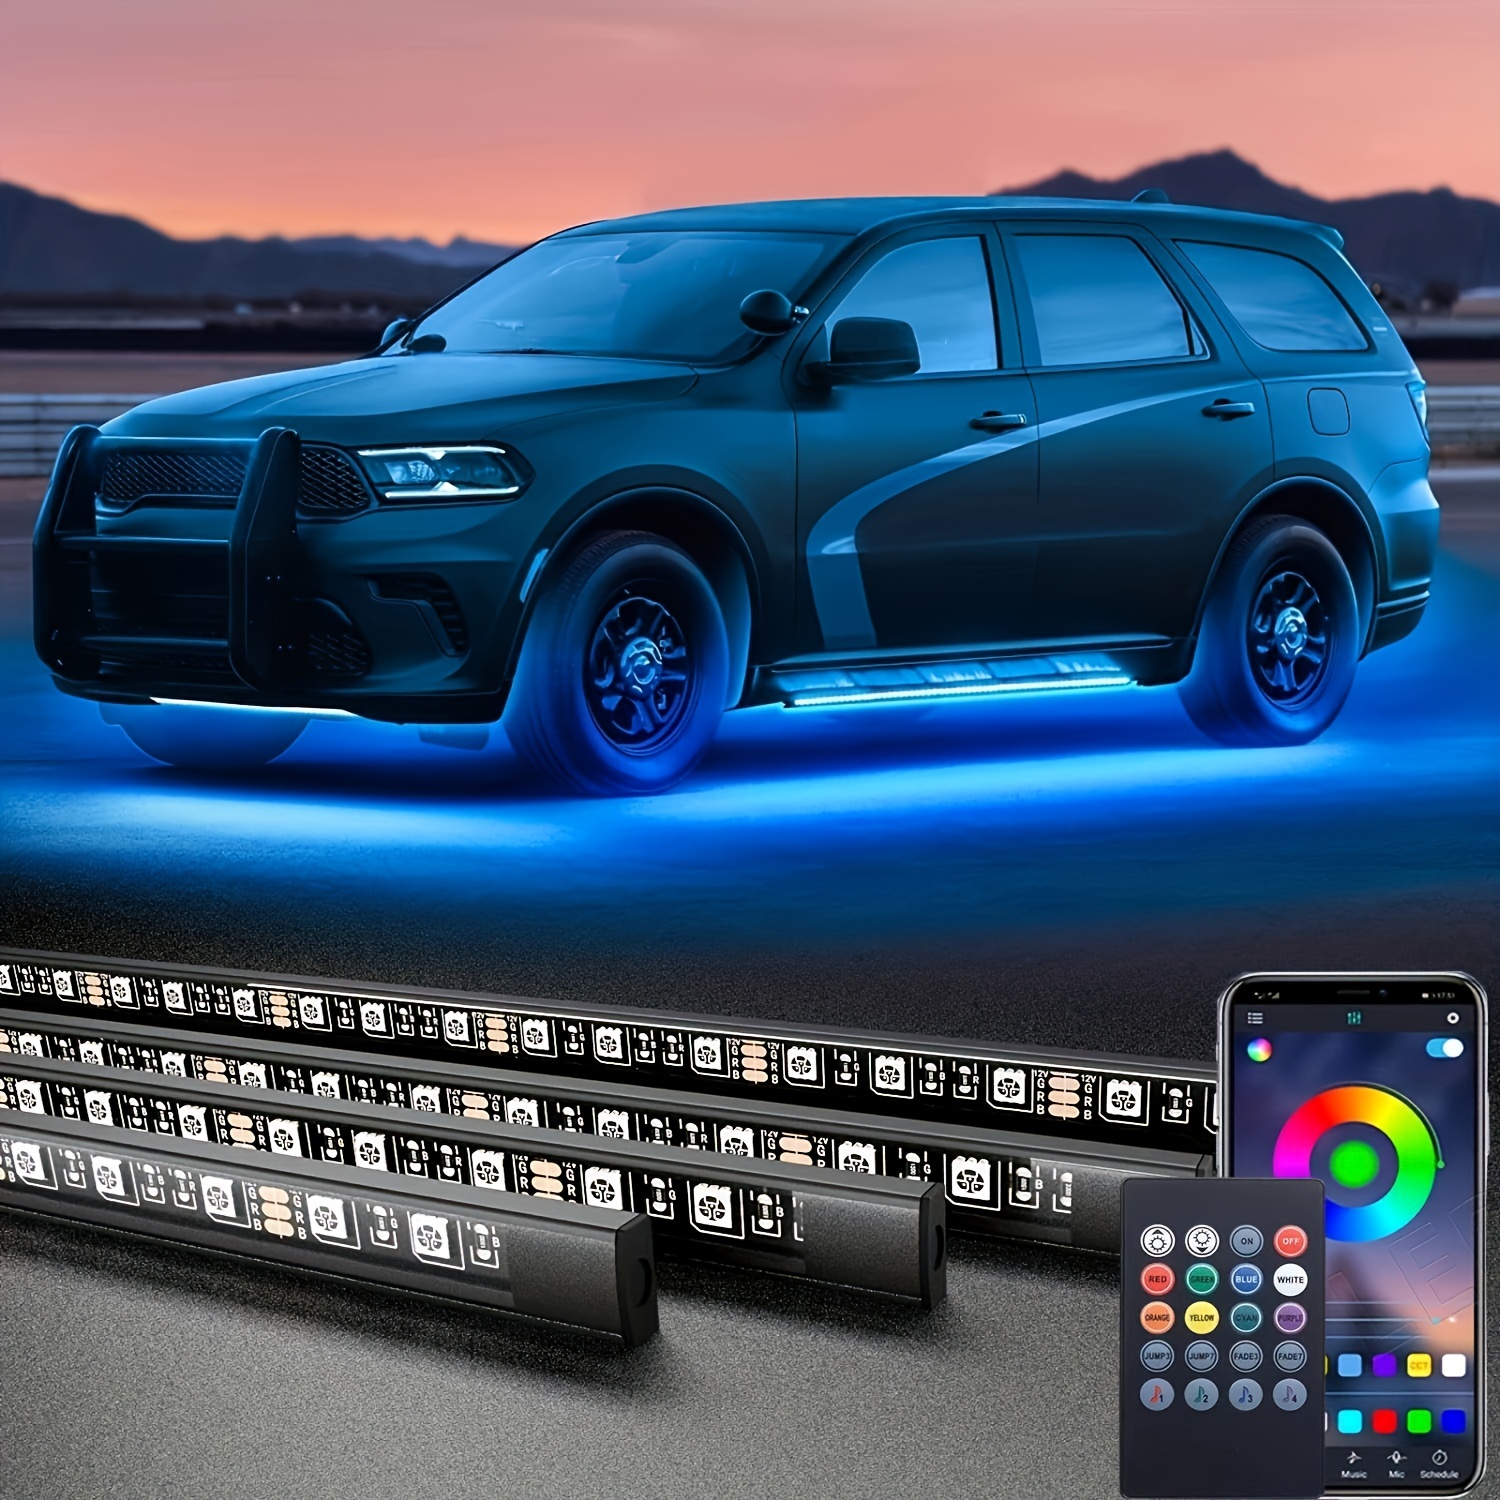 Kit d'éclairage LED intelligent pour châssis de voiture – 16